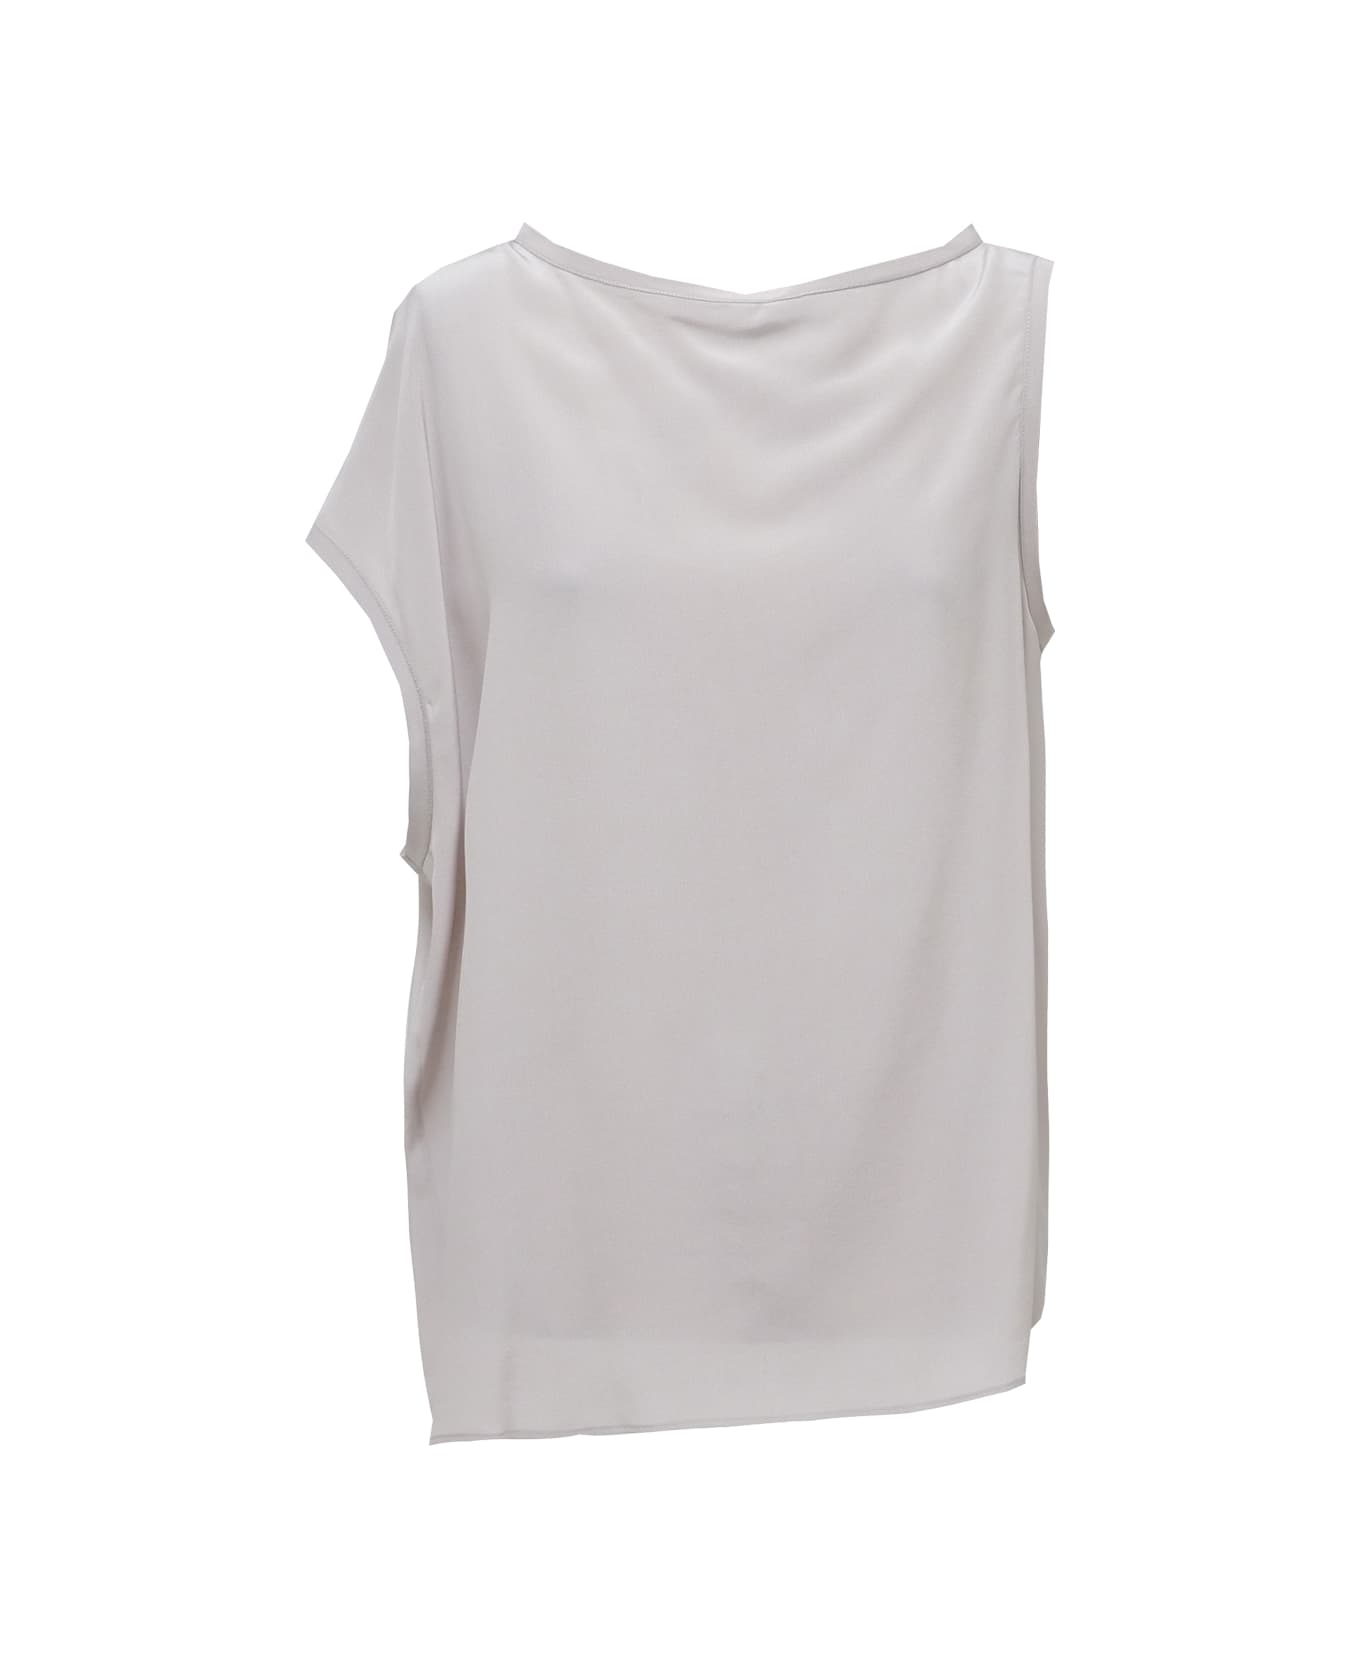 Alysi Shirt - White